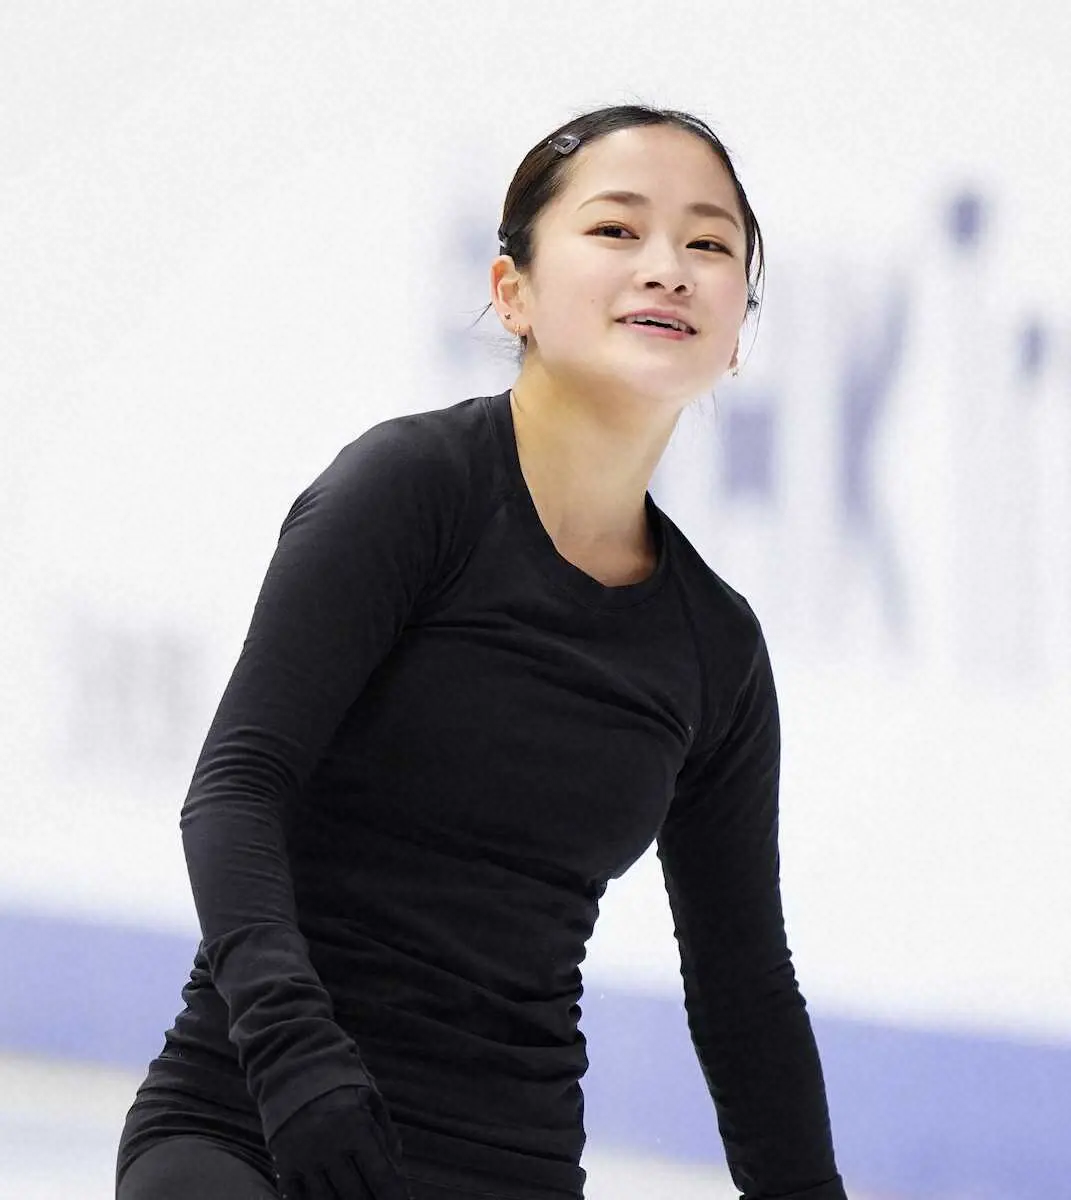 渡辺倫果「プレッシャーを楽しみつつ終えられれば」NHK杯公式練習で3回転半着氷